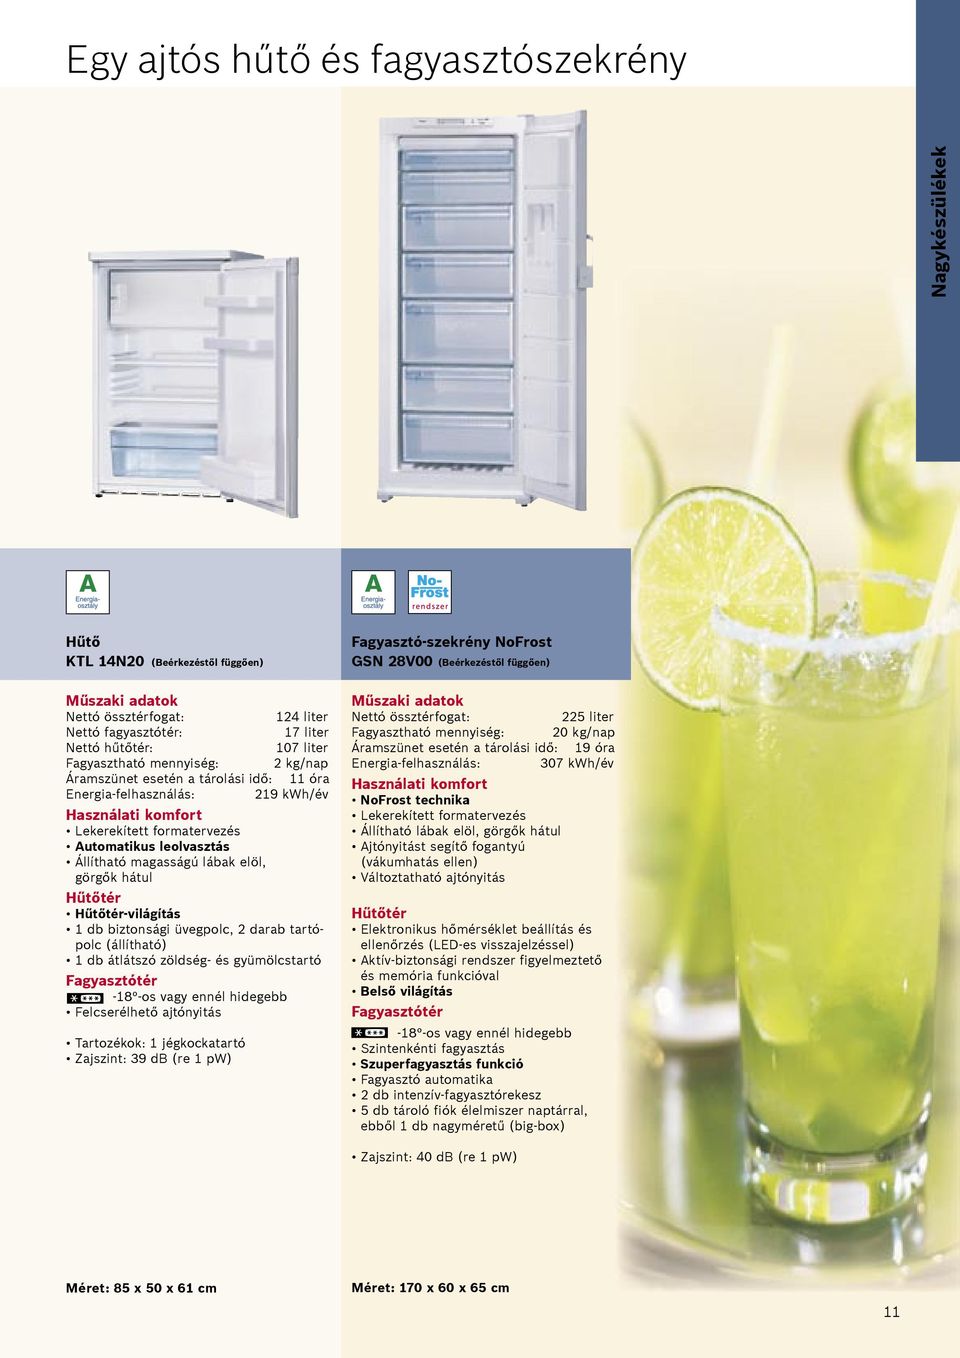 Hűtőtér-világítás 1 db biztonsági üvegpolc, 2 darab tartópolc (állítható) 1 db átlátszó zöldség- és gyümölcstartó Fagyasztótér -18 -os vagy ennél hidegebb Felcserélhető ajtónyitás Tartozékok: 1